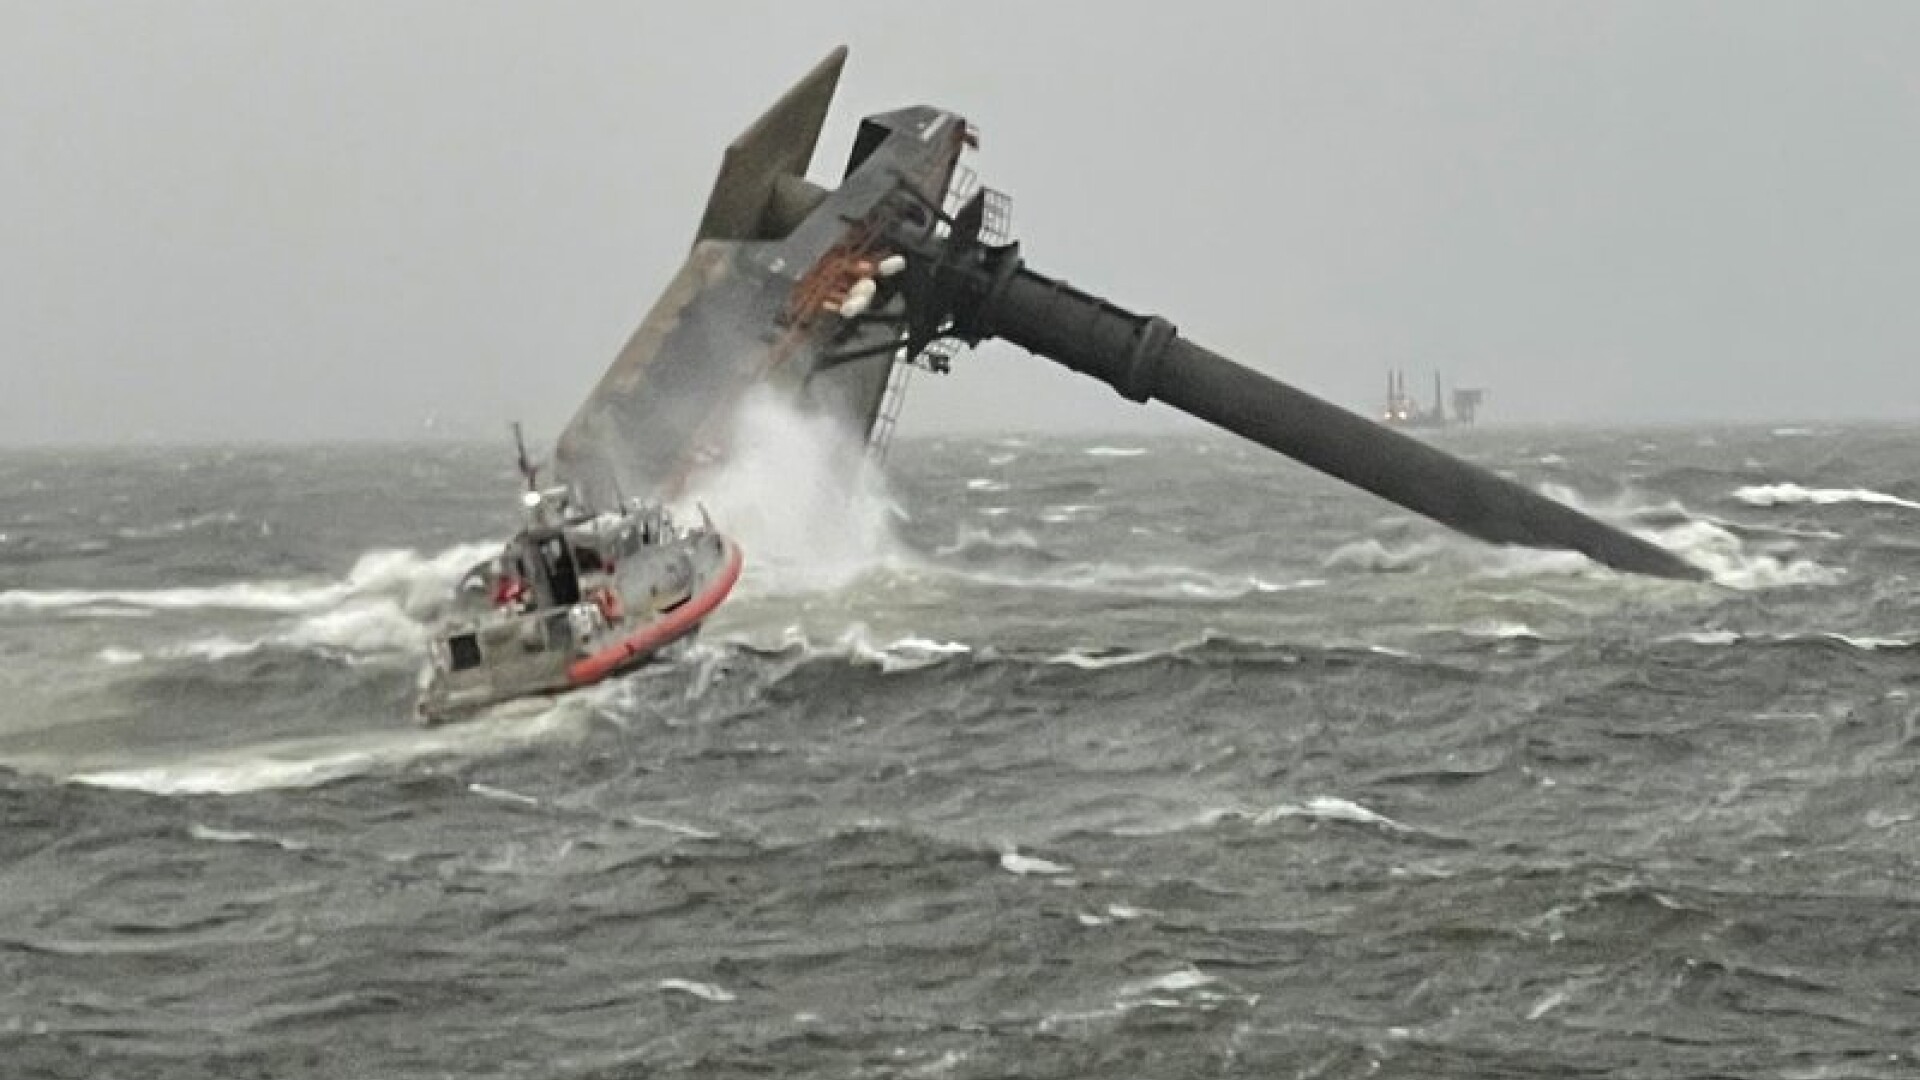 Un mort și 12 dispăruți, după ce o navă s-a răsturnat în Golful Mexic